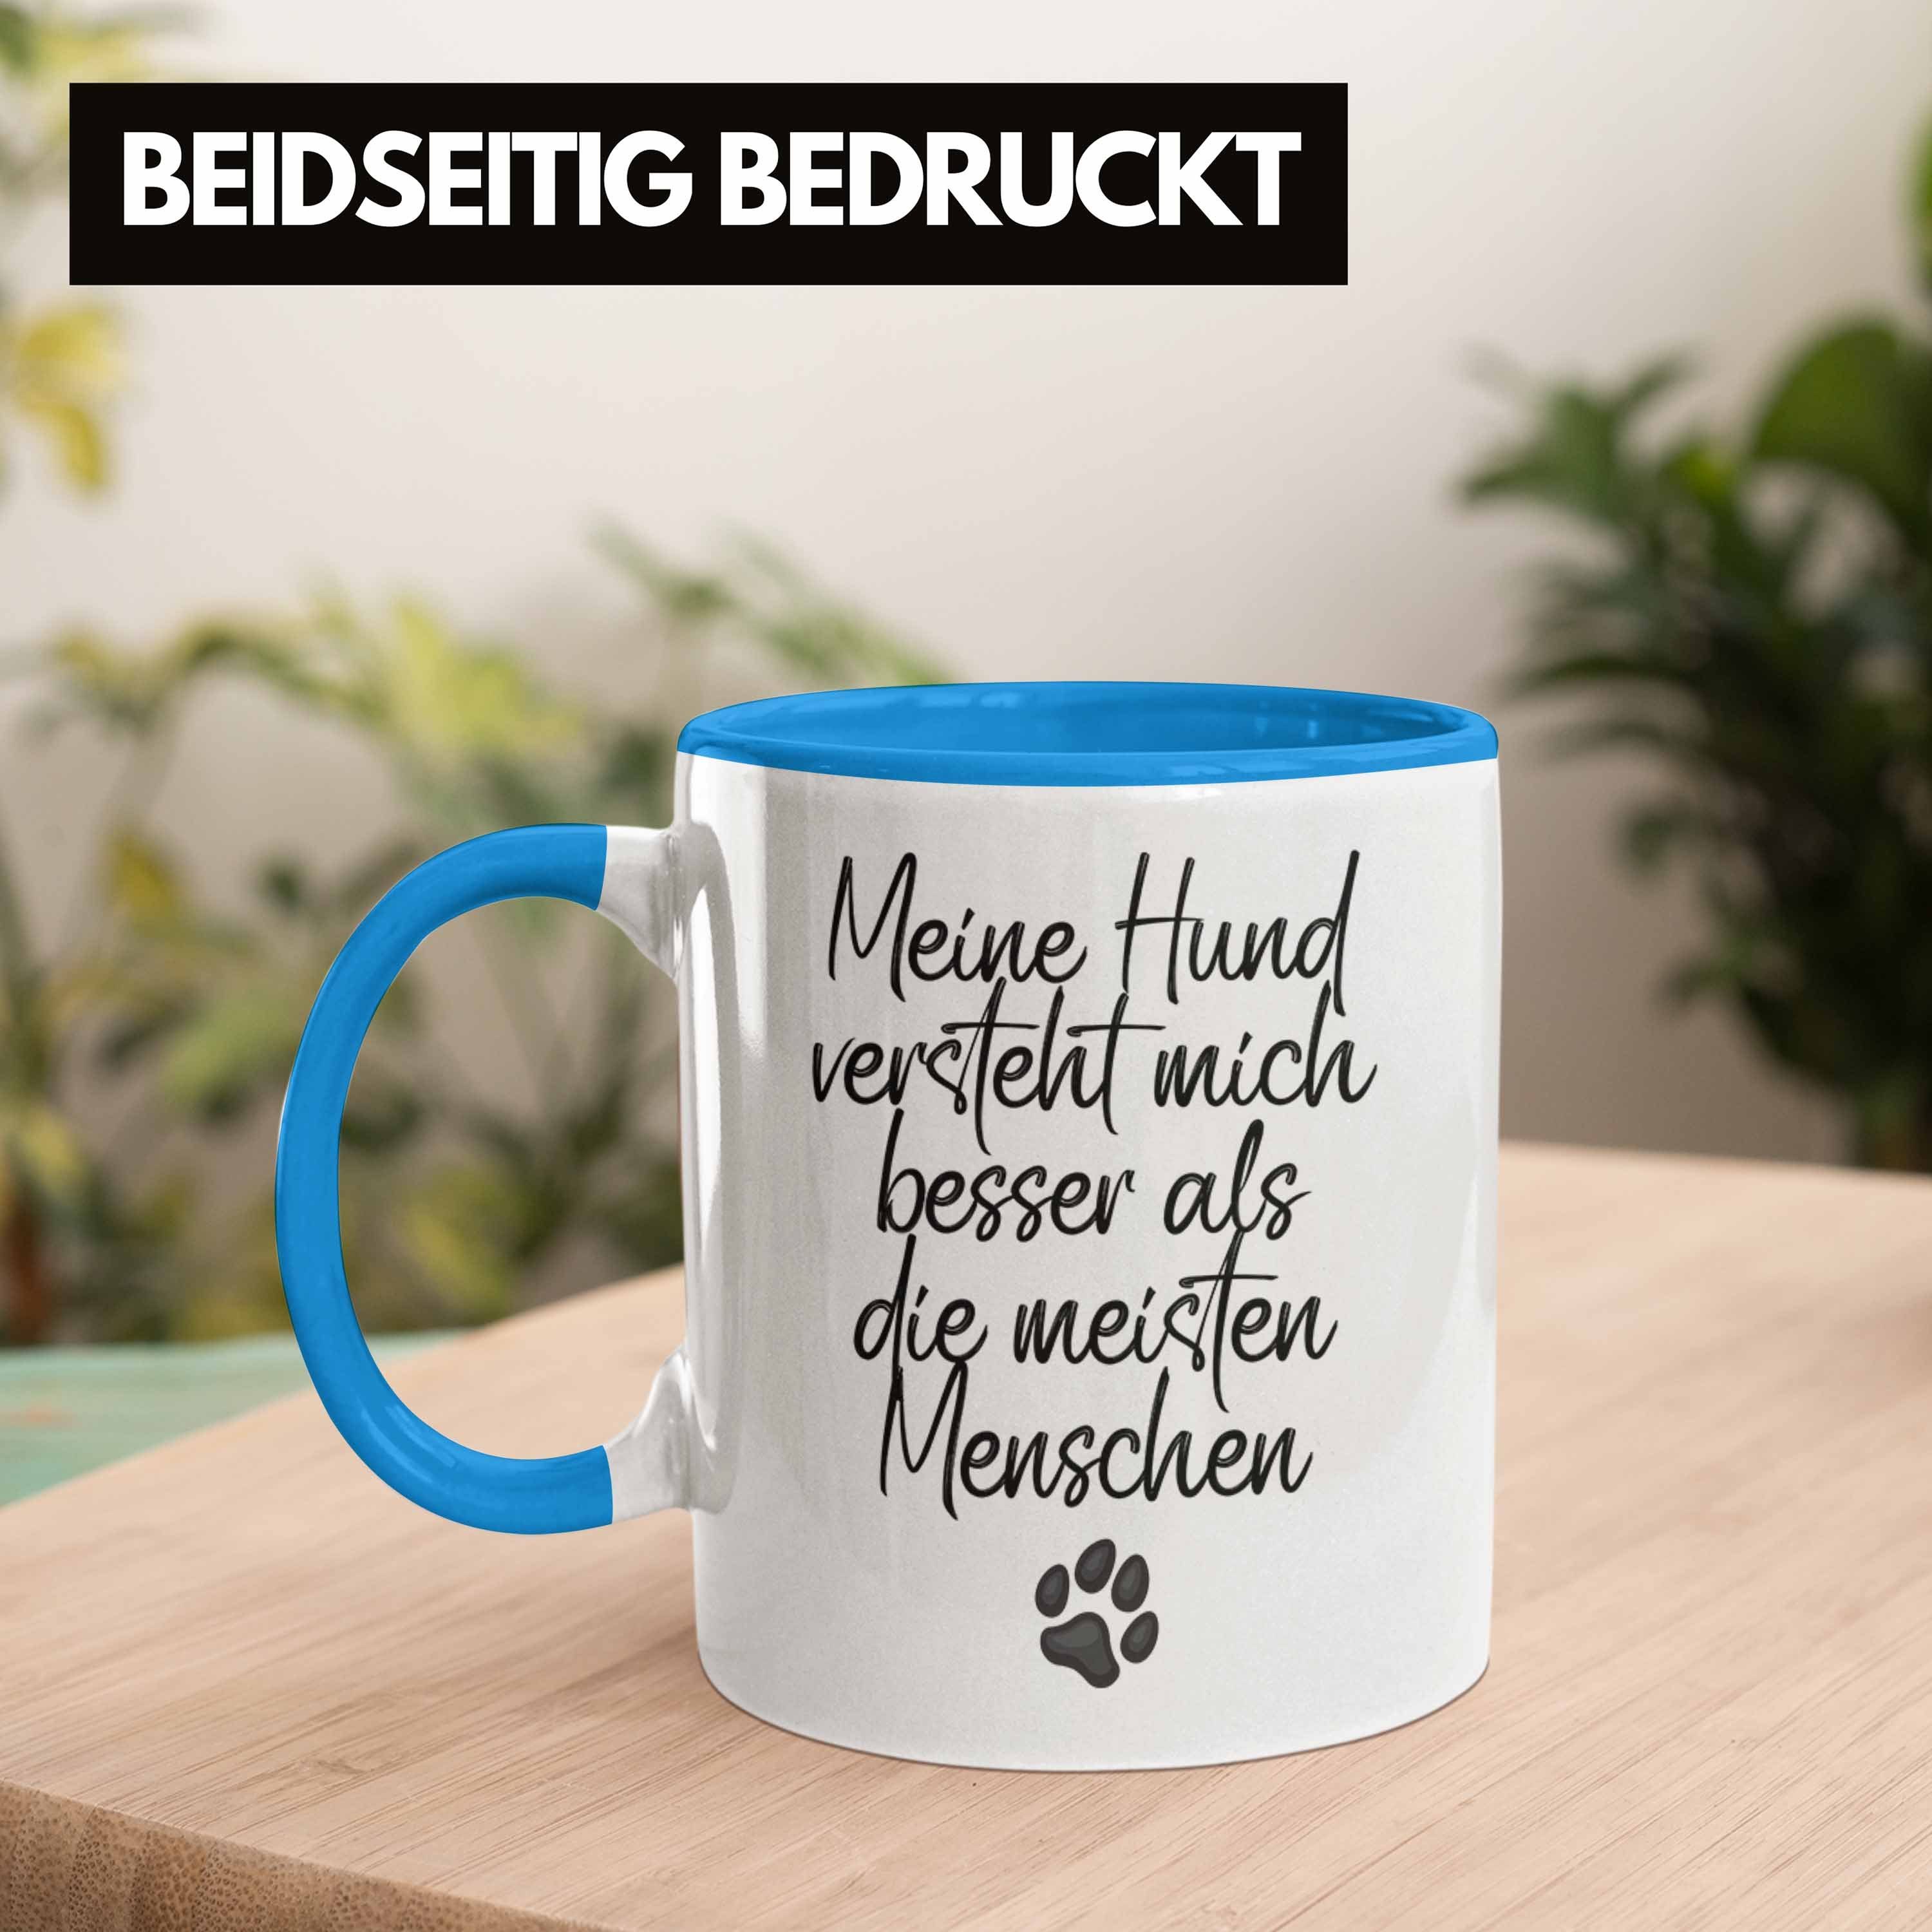 Trendation Tasse Hundebesitzer Hund Versteht Blau Kaffee-Becher Geschenk Mich Bes Tasse Mein